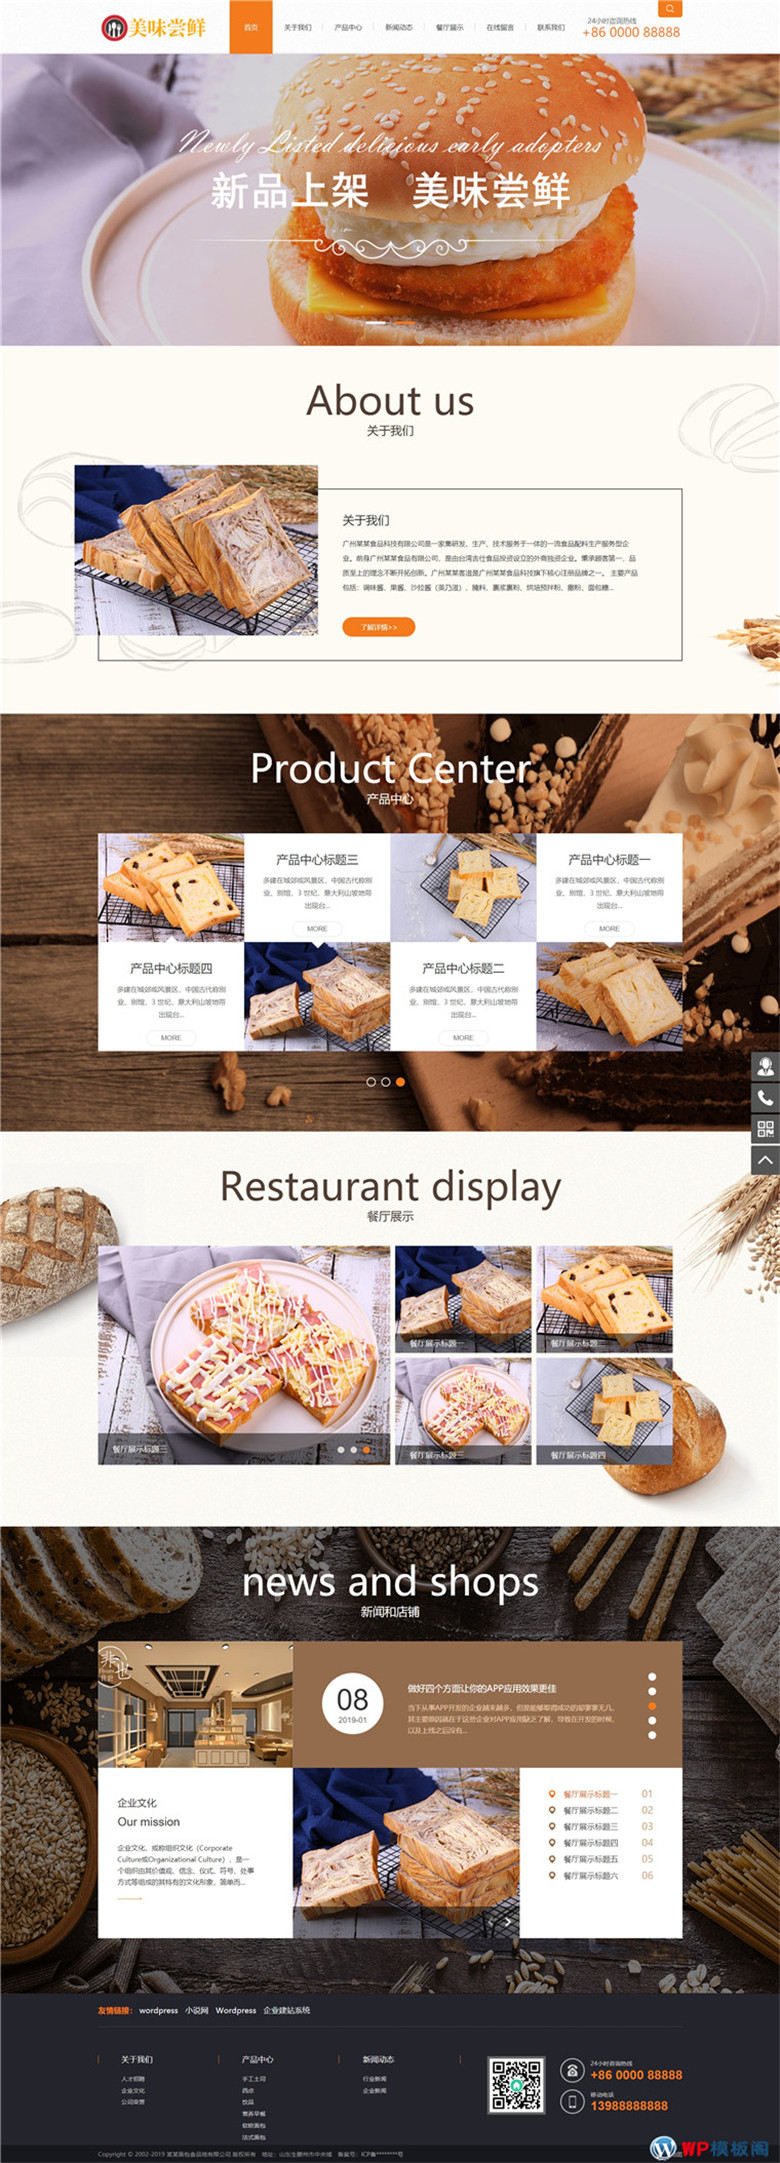 响应式蛋糕面包烘焙食品美食类企业网站WordPress模板(带手机站)演示图